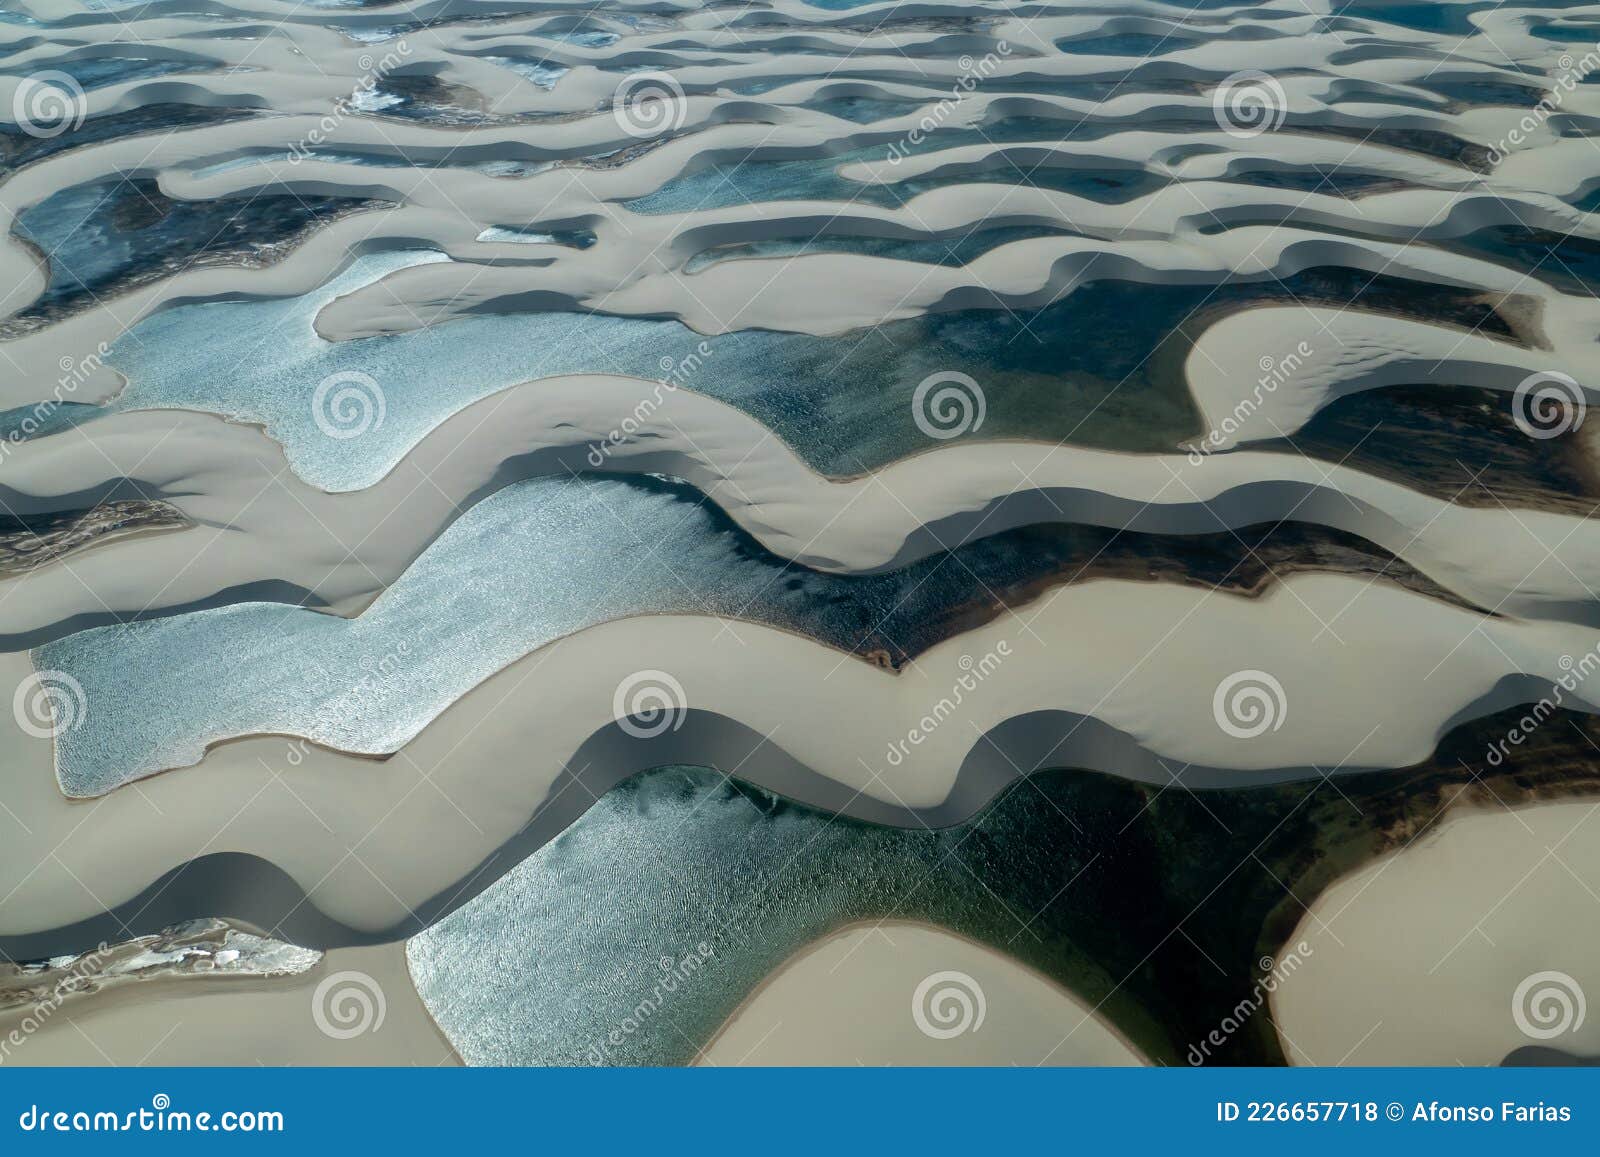 aerial view of sand dunes in lencois maranhenses national park, brazil